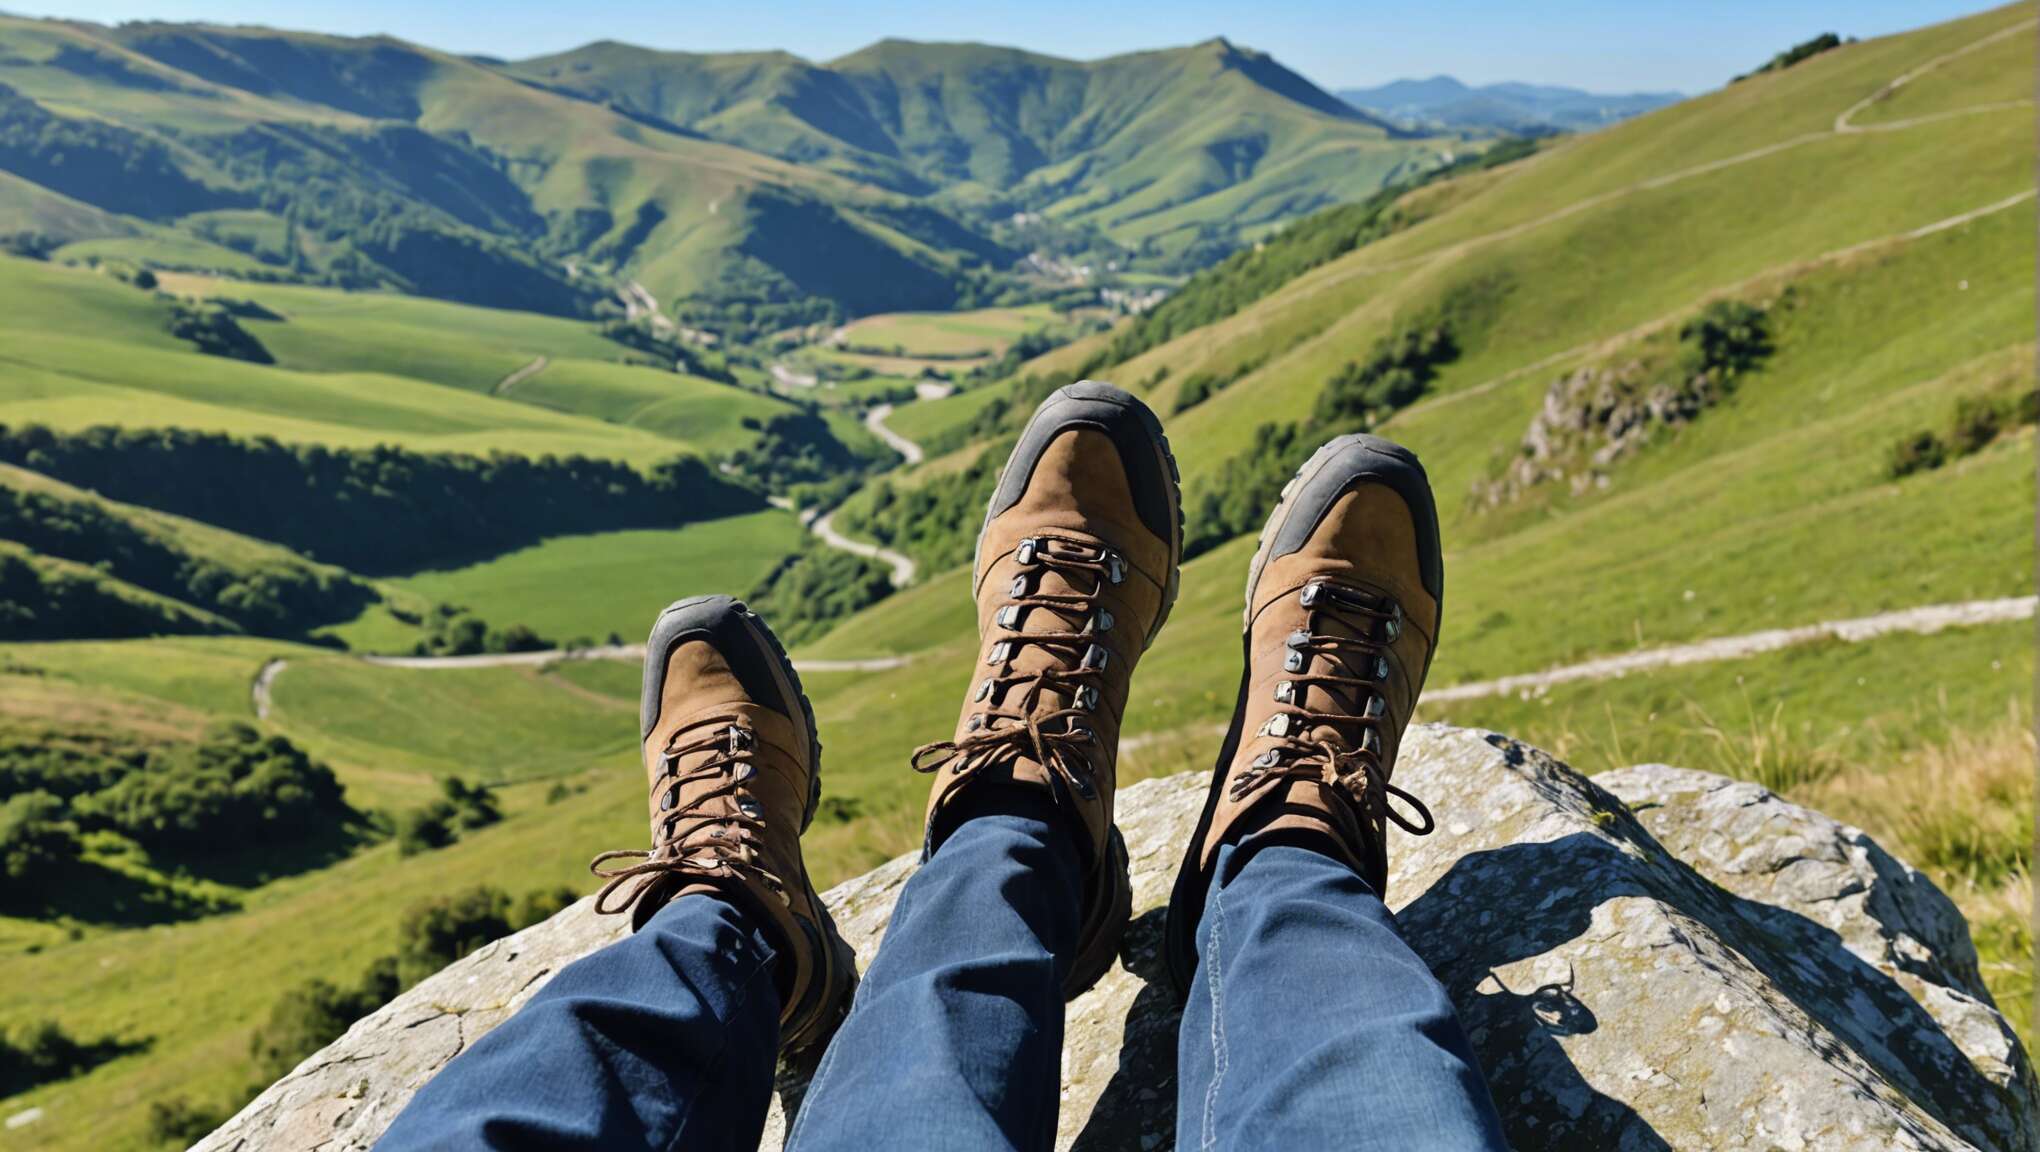 Choisir ses chaussures de randonnée : confort et sécurité avant tout